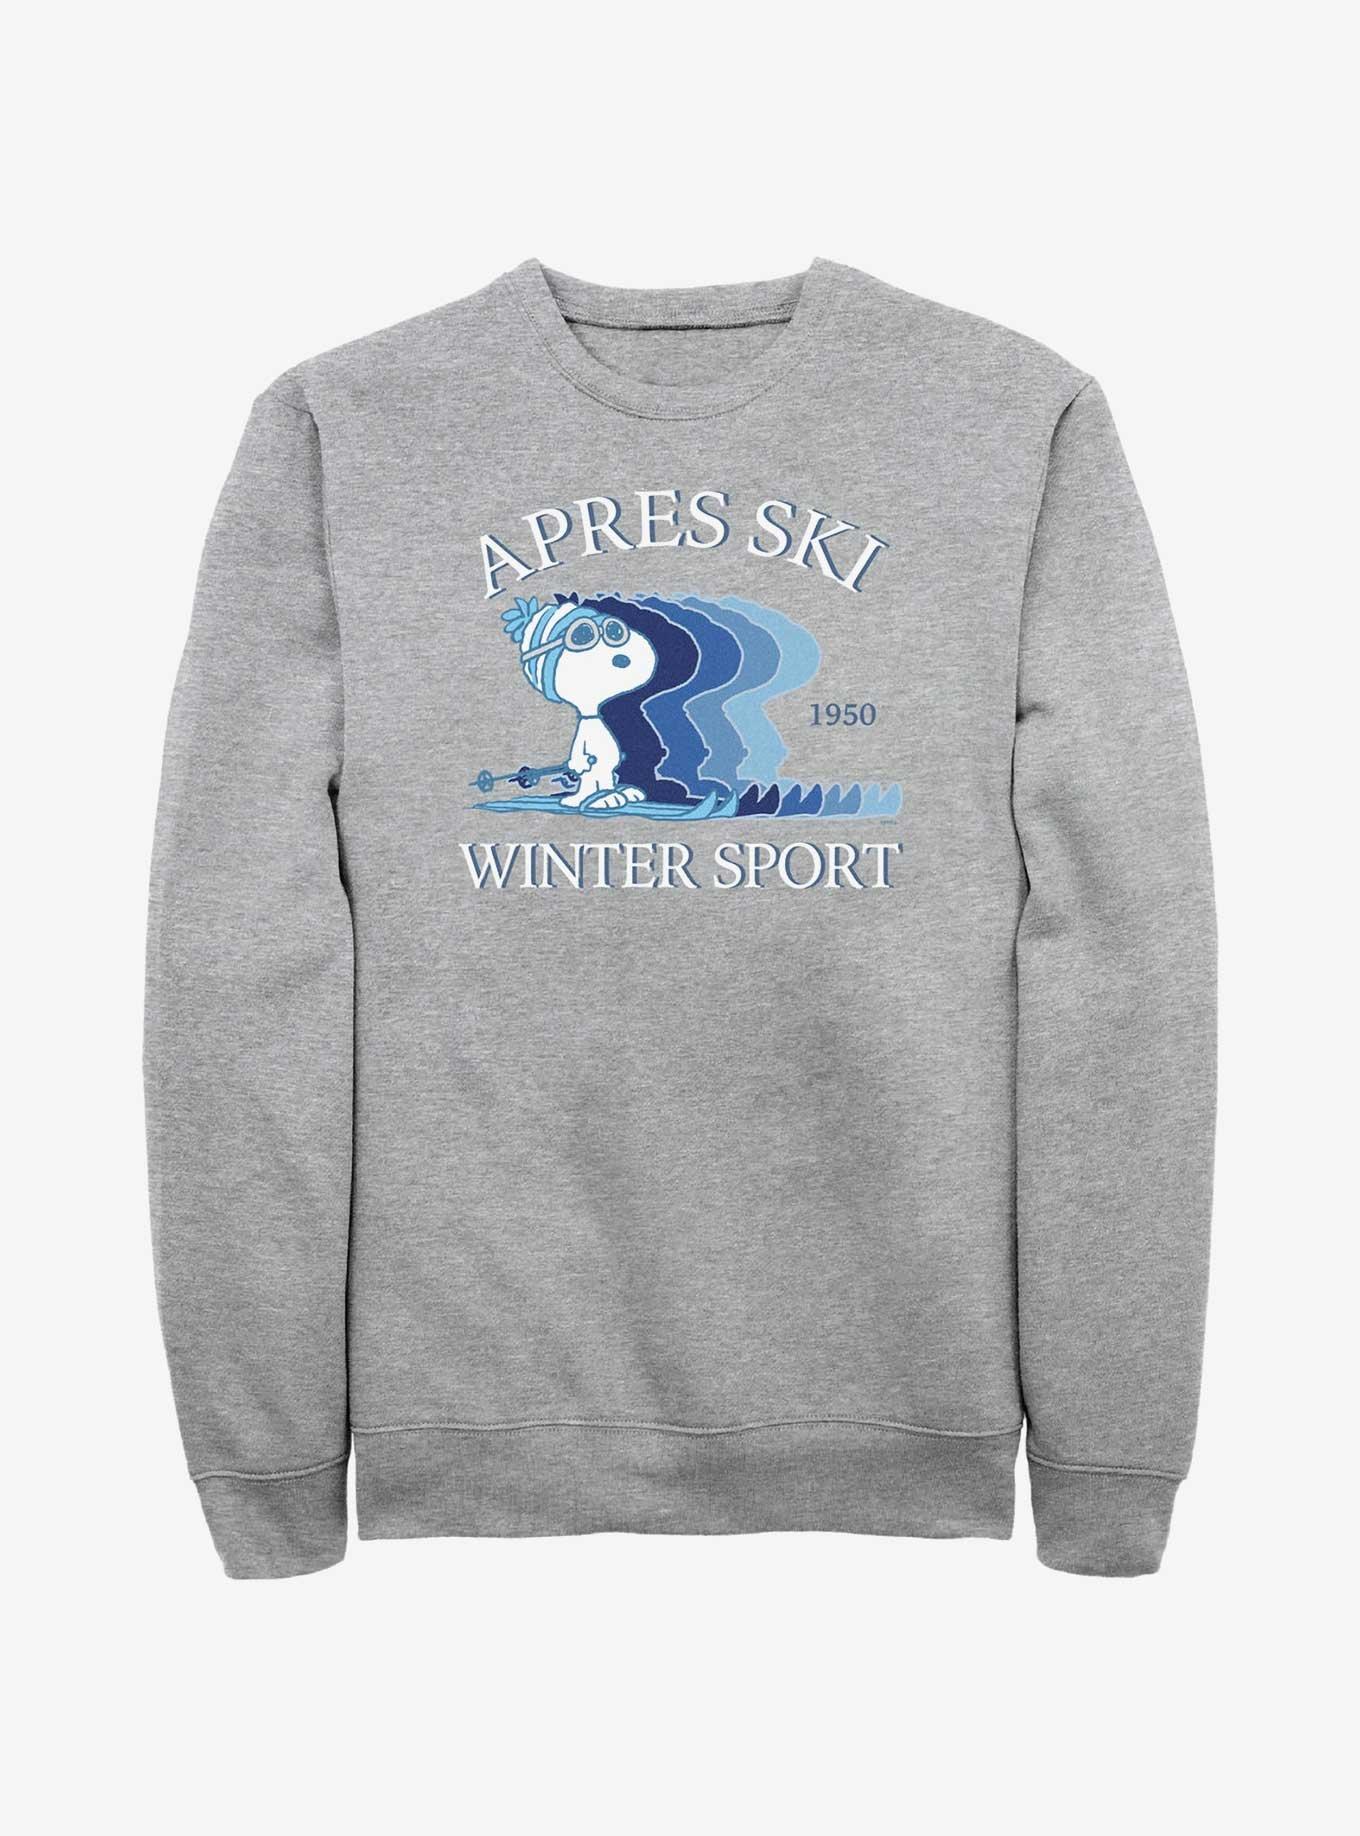 Hot Topic Peanuts Snoopy Apres Ski Winter Sport Sweatshirt